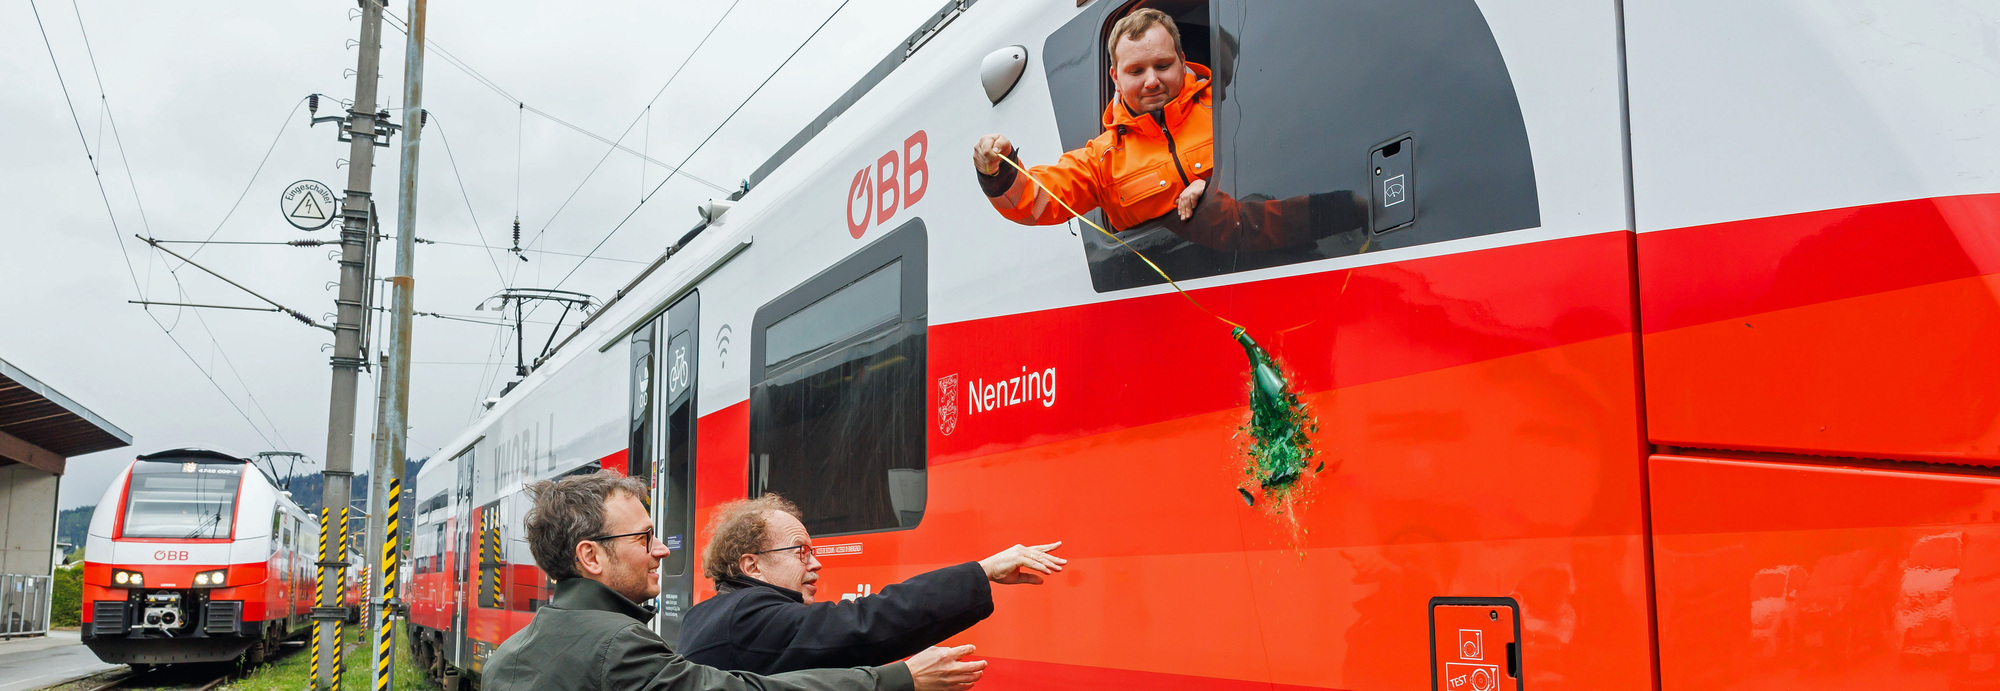 Neue S-Bahn-Garnituren im Namen der Regionen, Städte und Gemeinden unterwegs